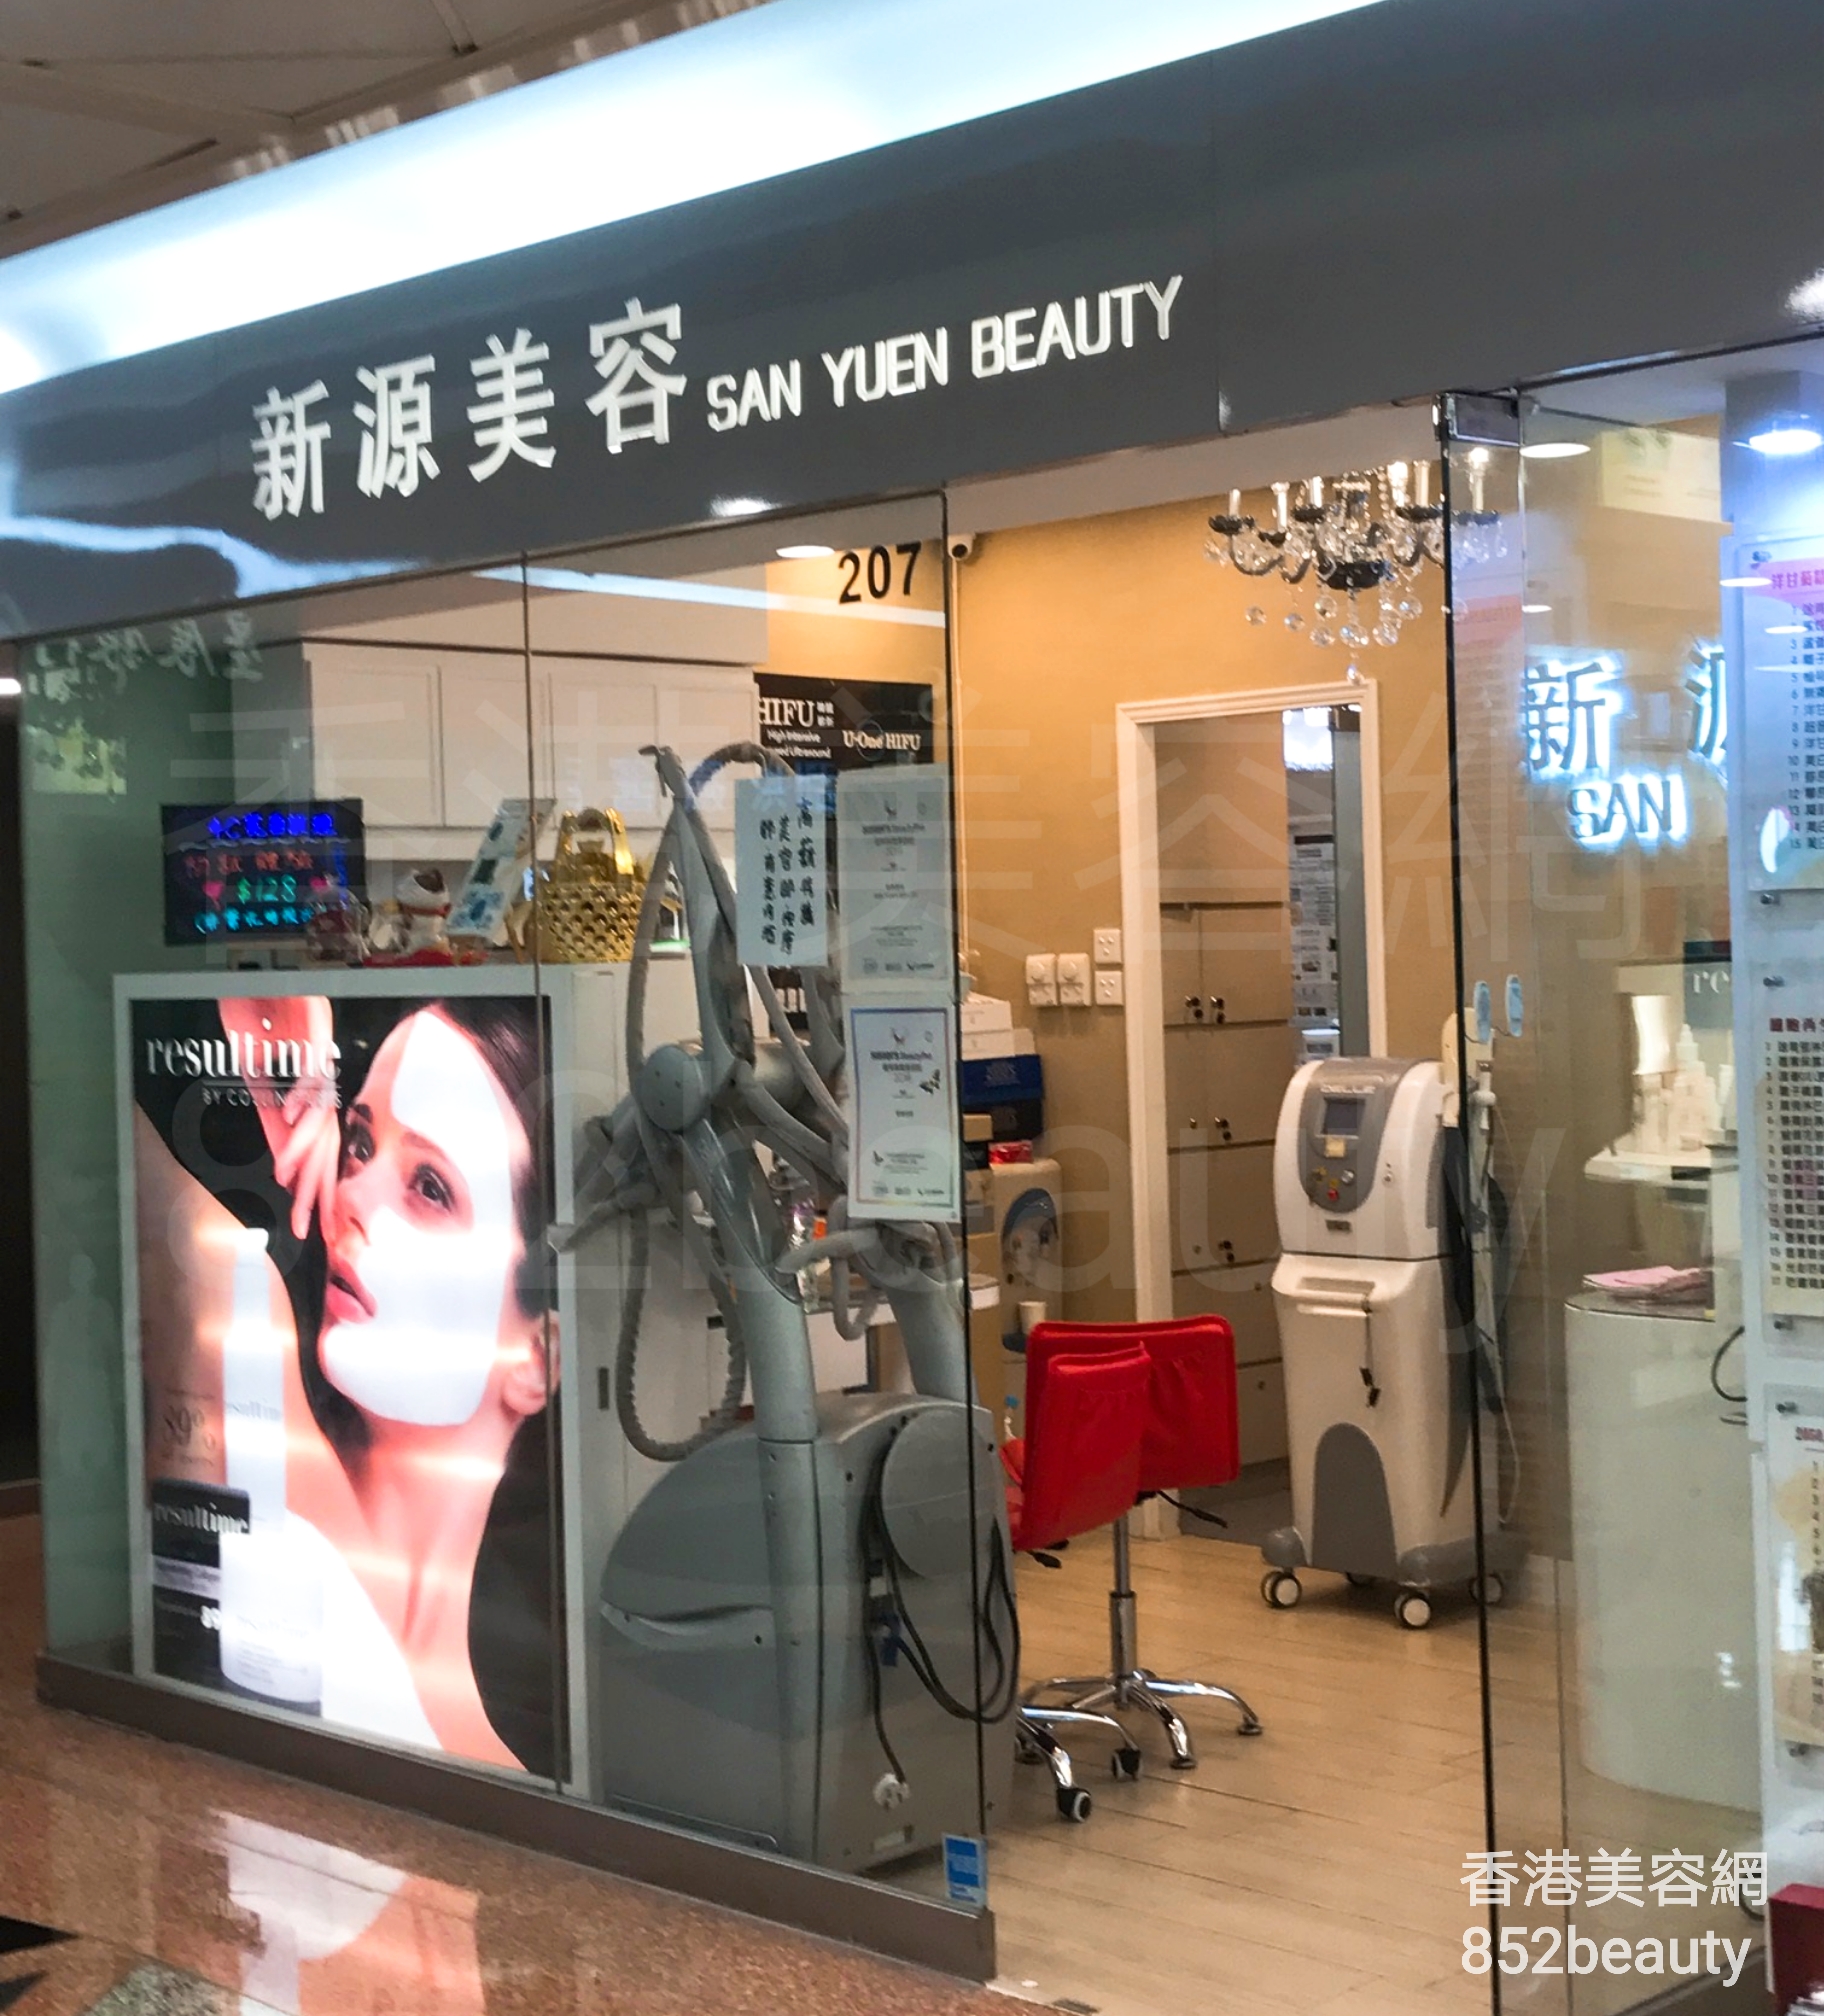 香港美容網 Hong Kong Beauty Salon 美容院 / 美容師: 新源美容 SAN YUEN BEAUTY